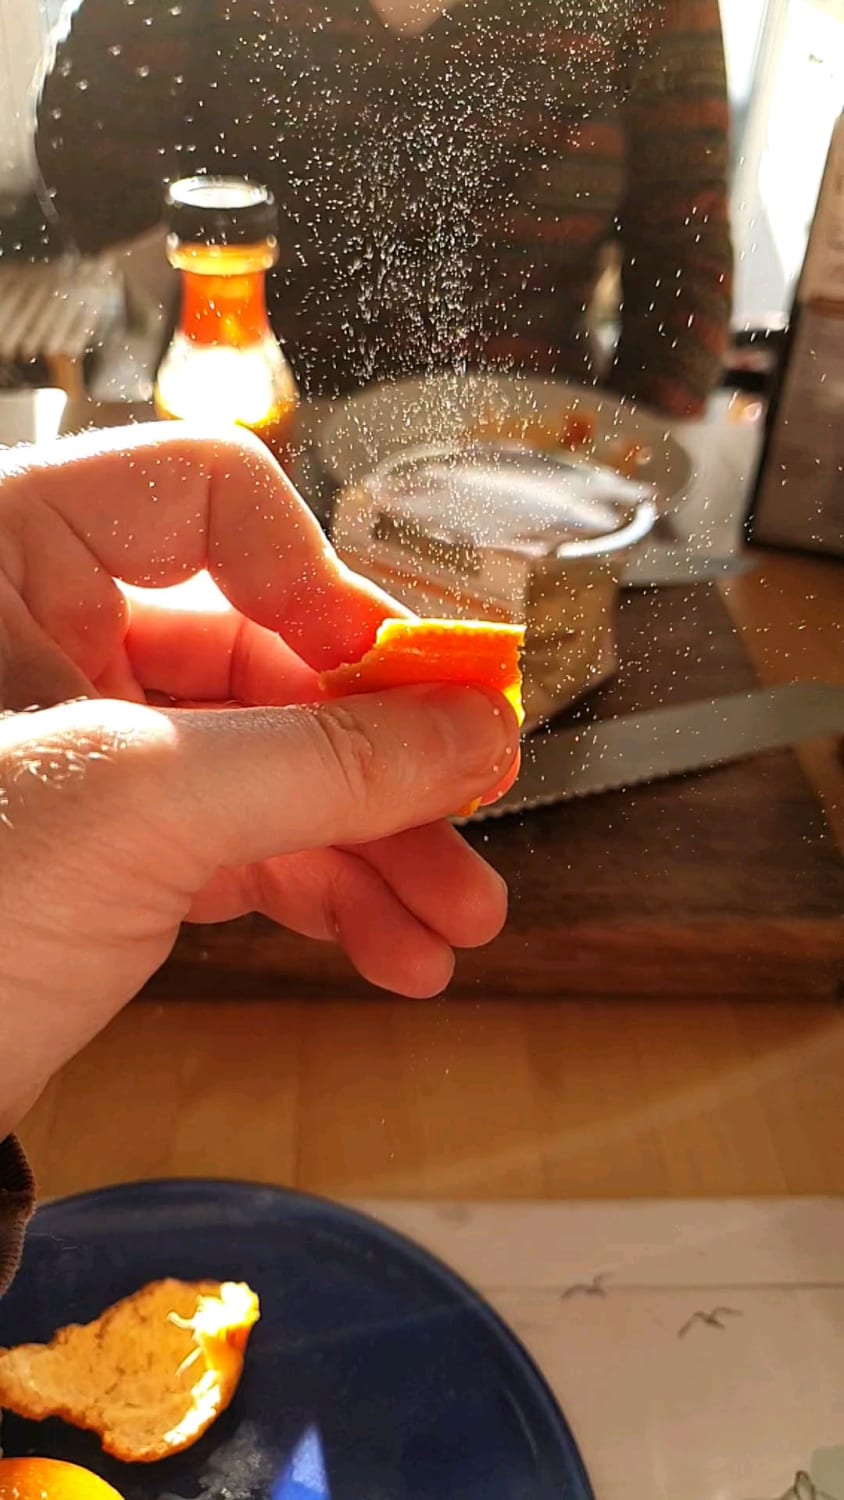 Squeezing orange peel in the sunlight